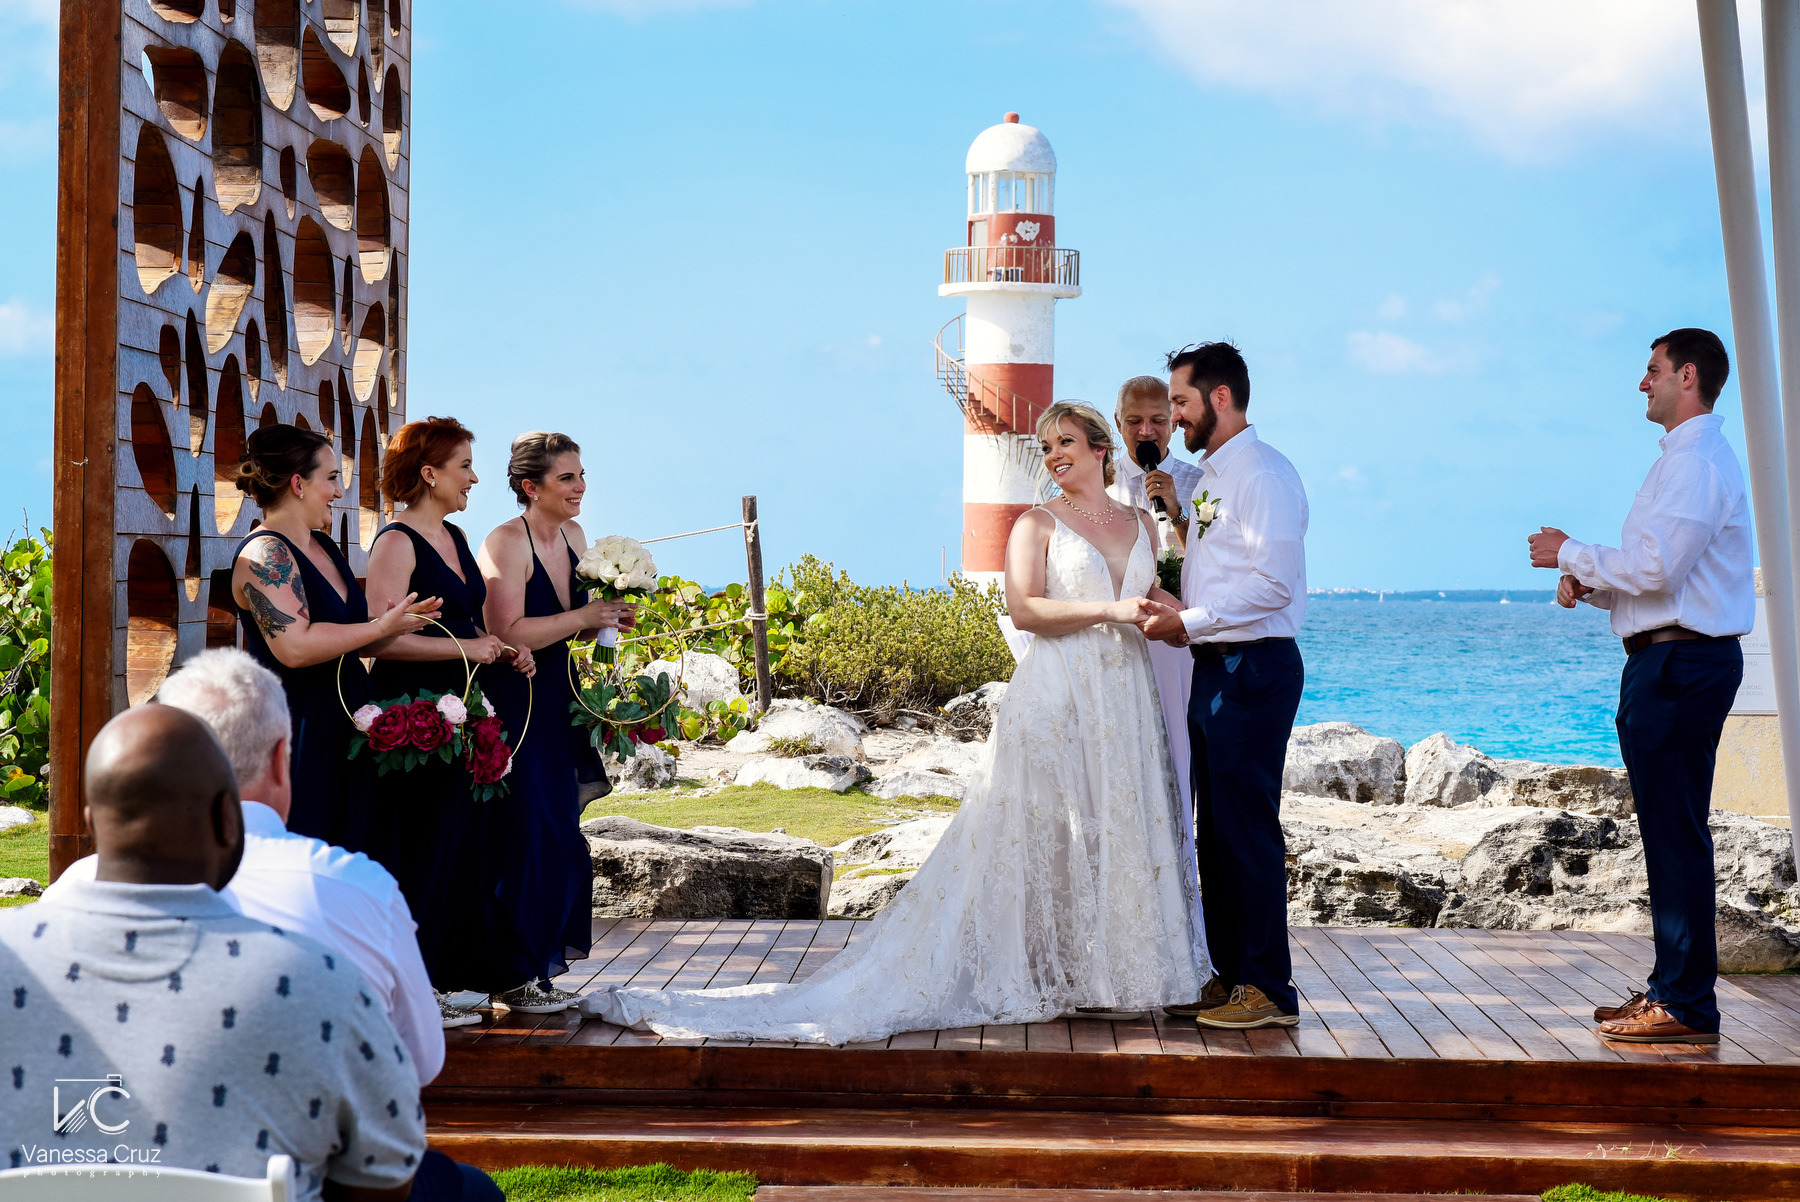 Lighthouse Gazebo Wedding Ceremony Hyatt Ziva Cancun Mexico